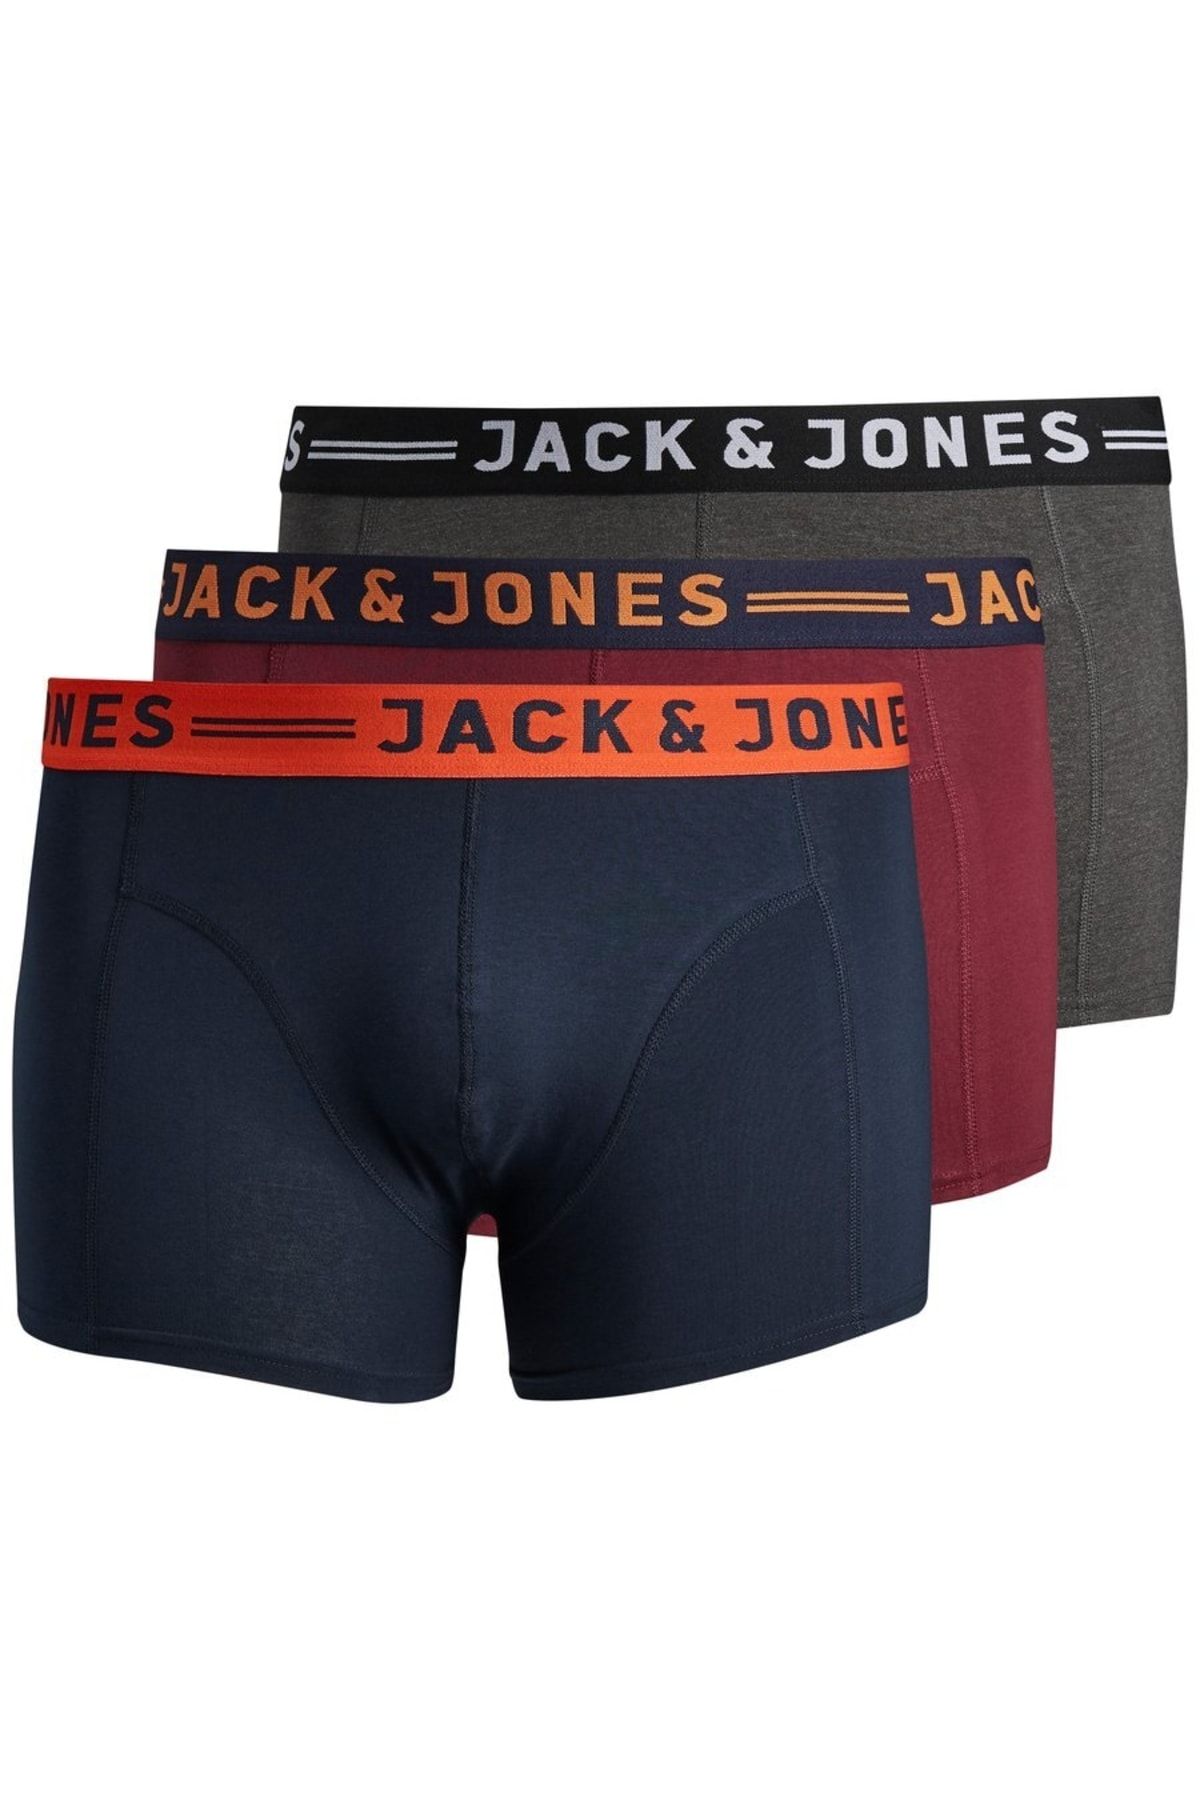 Jack & Jones Jack Jones Lichfield Trunks Noos 3 Pck Pls Erkek Bordo Boxer 12147592-18